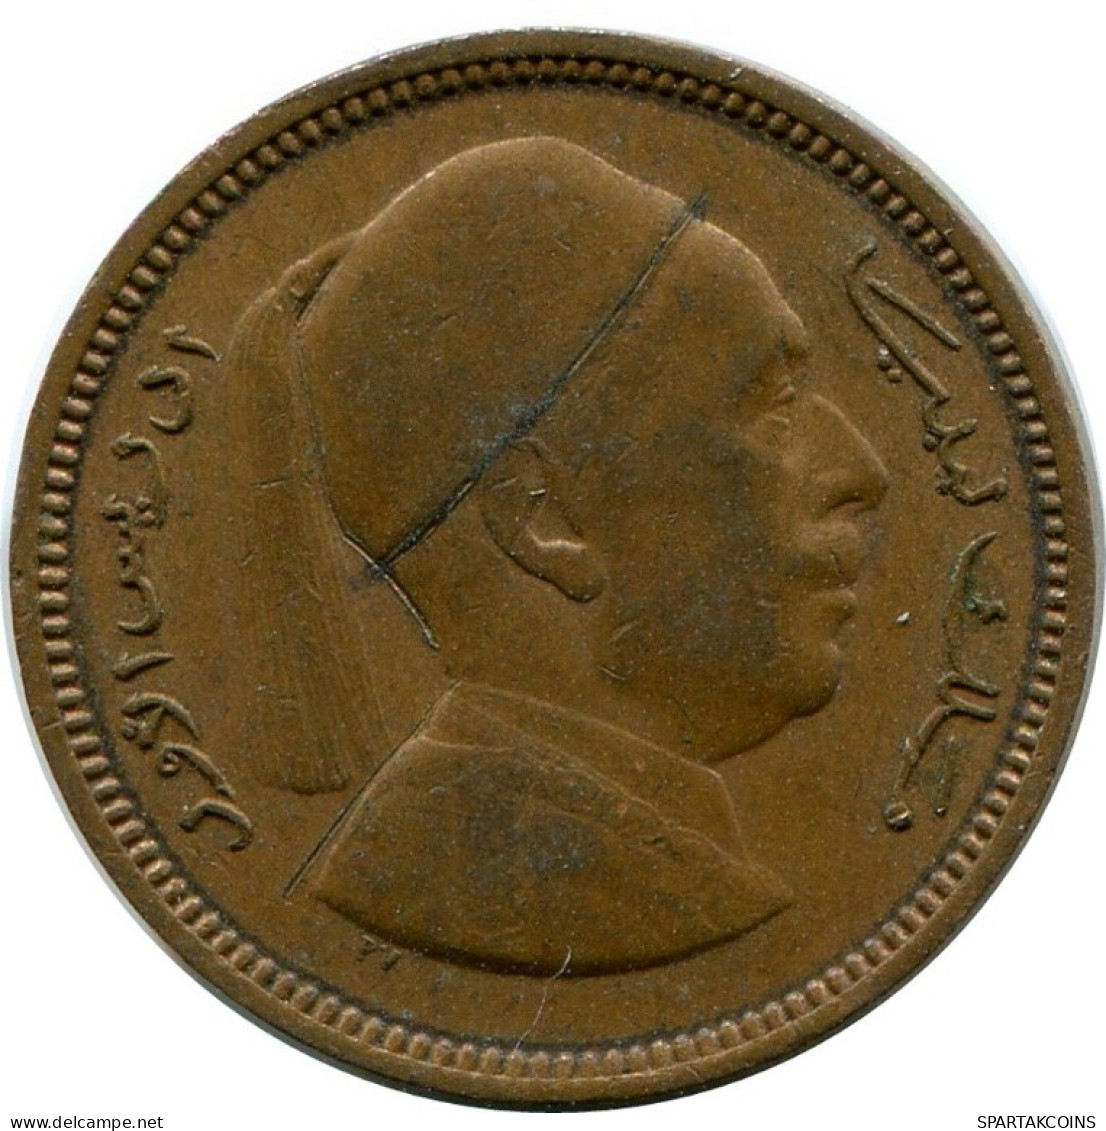 1 MILLIEME 1952 LIBYA Coin #AK328.U.A - Libyen